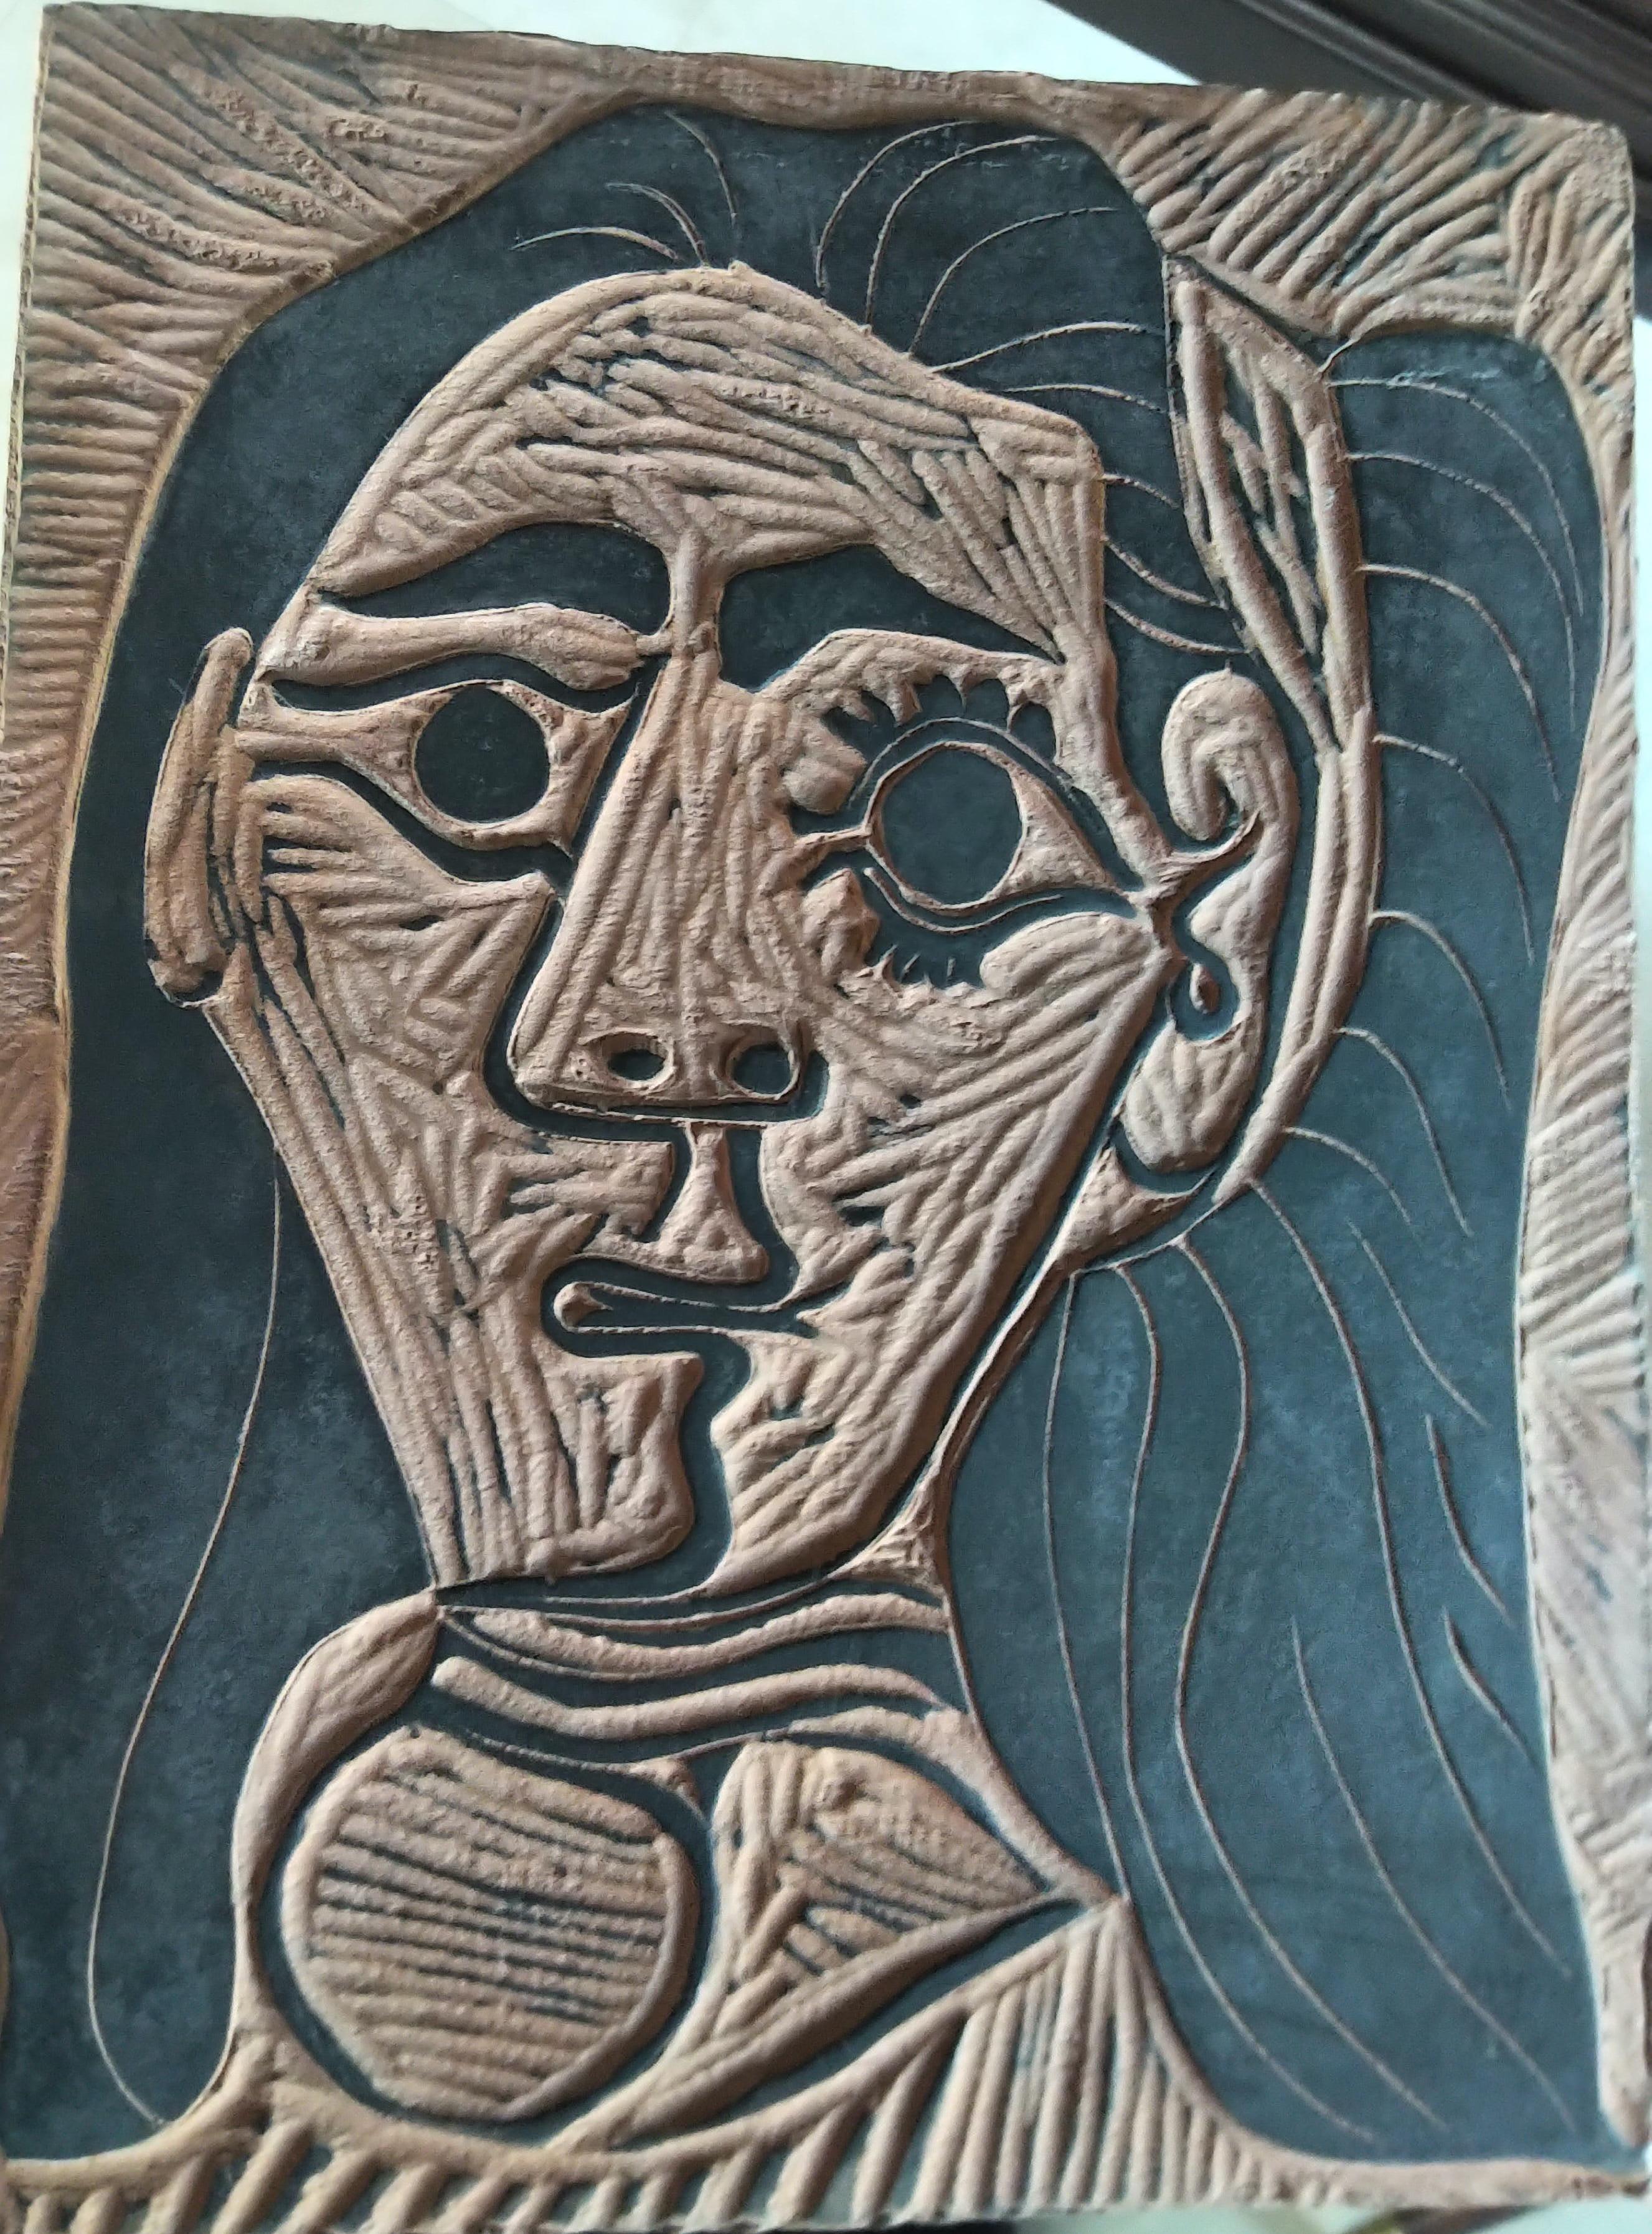 Picasso Madoura Keramik A.R. 520 Frau mit flauschigem Haar – Sculpture von Pablo Picasso